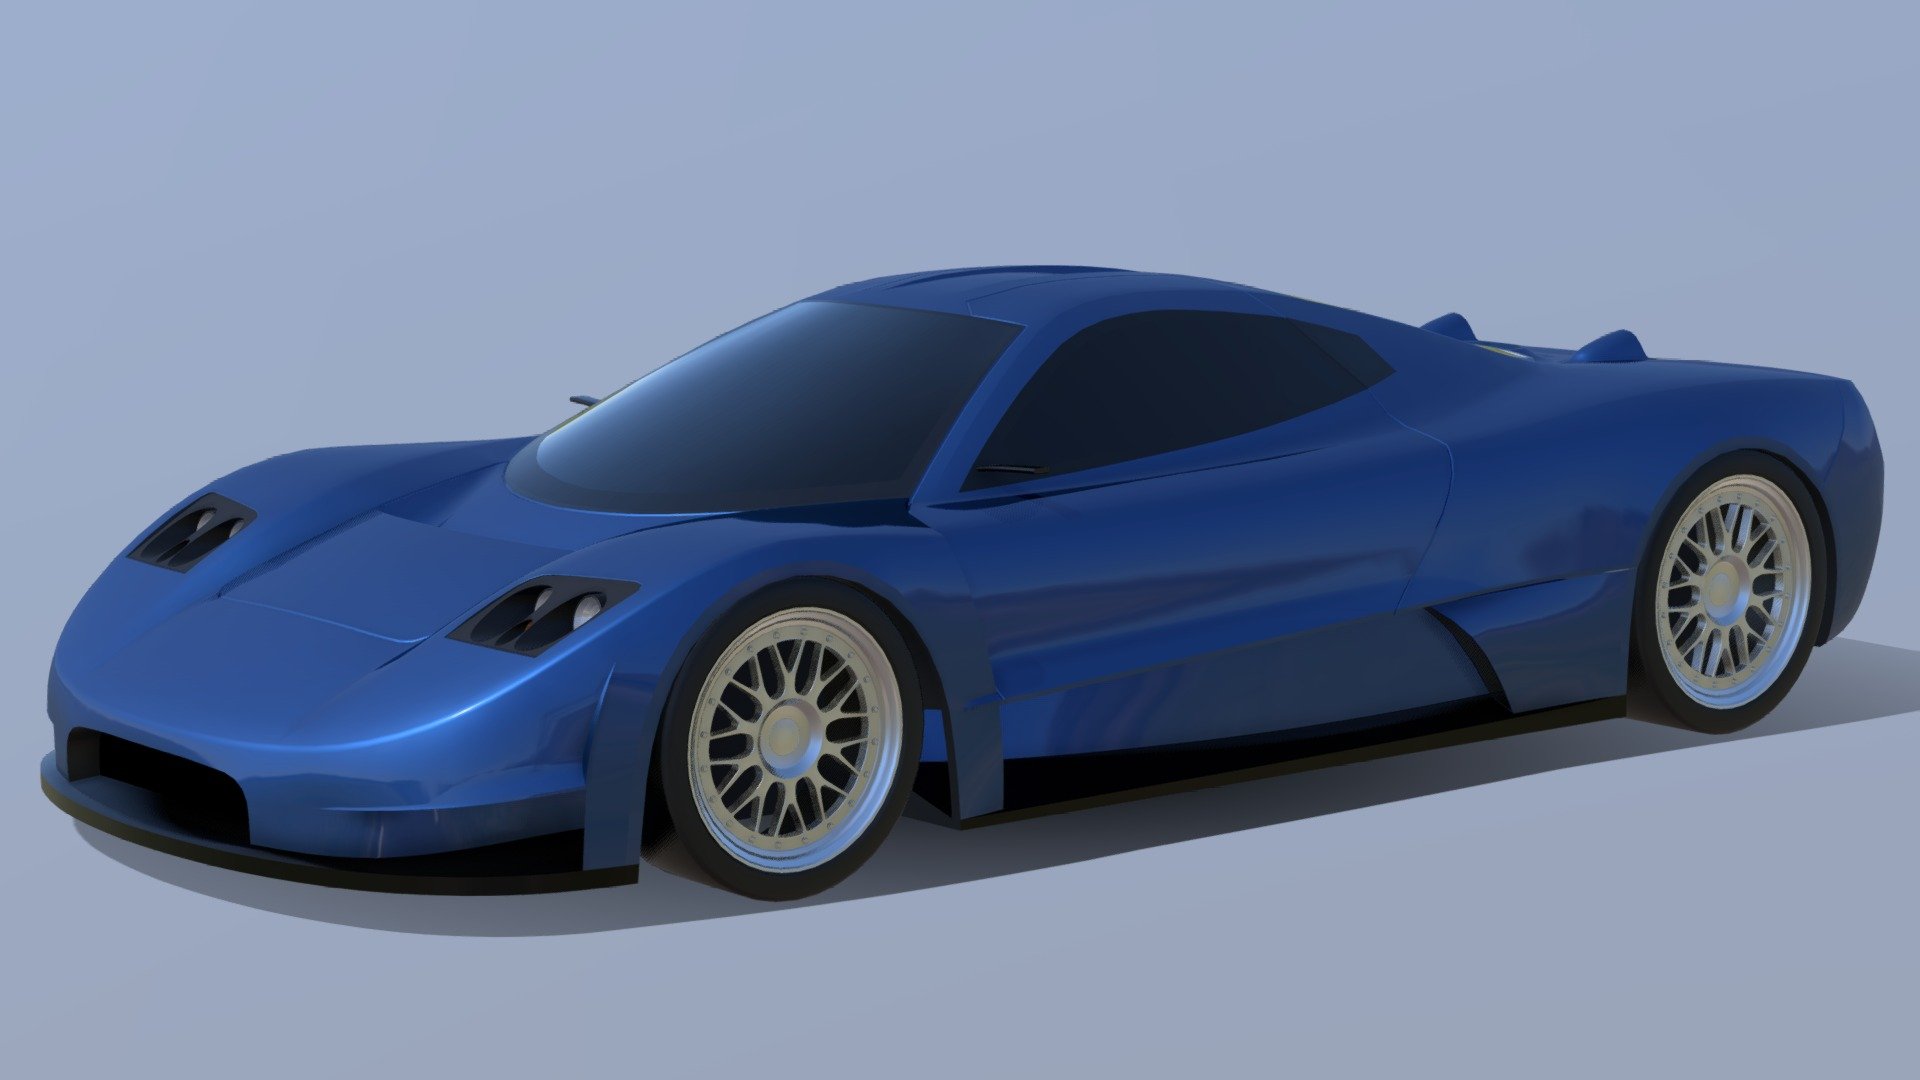 australian supercar concept that never saw the light of day

real shame, beautiful car, cool asf too

https://en.wikipedia.org/wiki/Joss_JP1#Joss_JT1 - 2004 Joss JT1 - 3D model by veratech 3d model